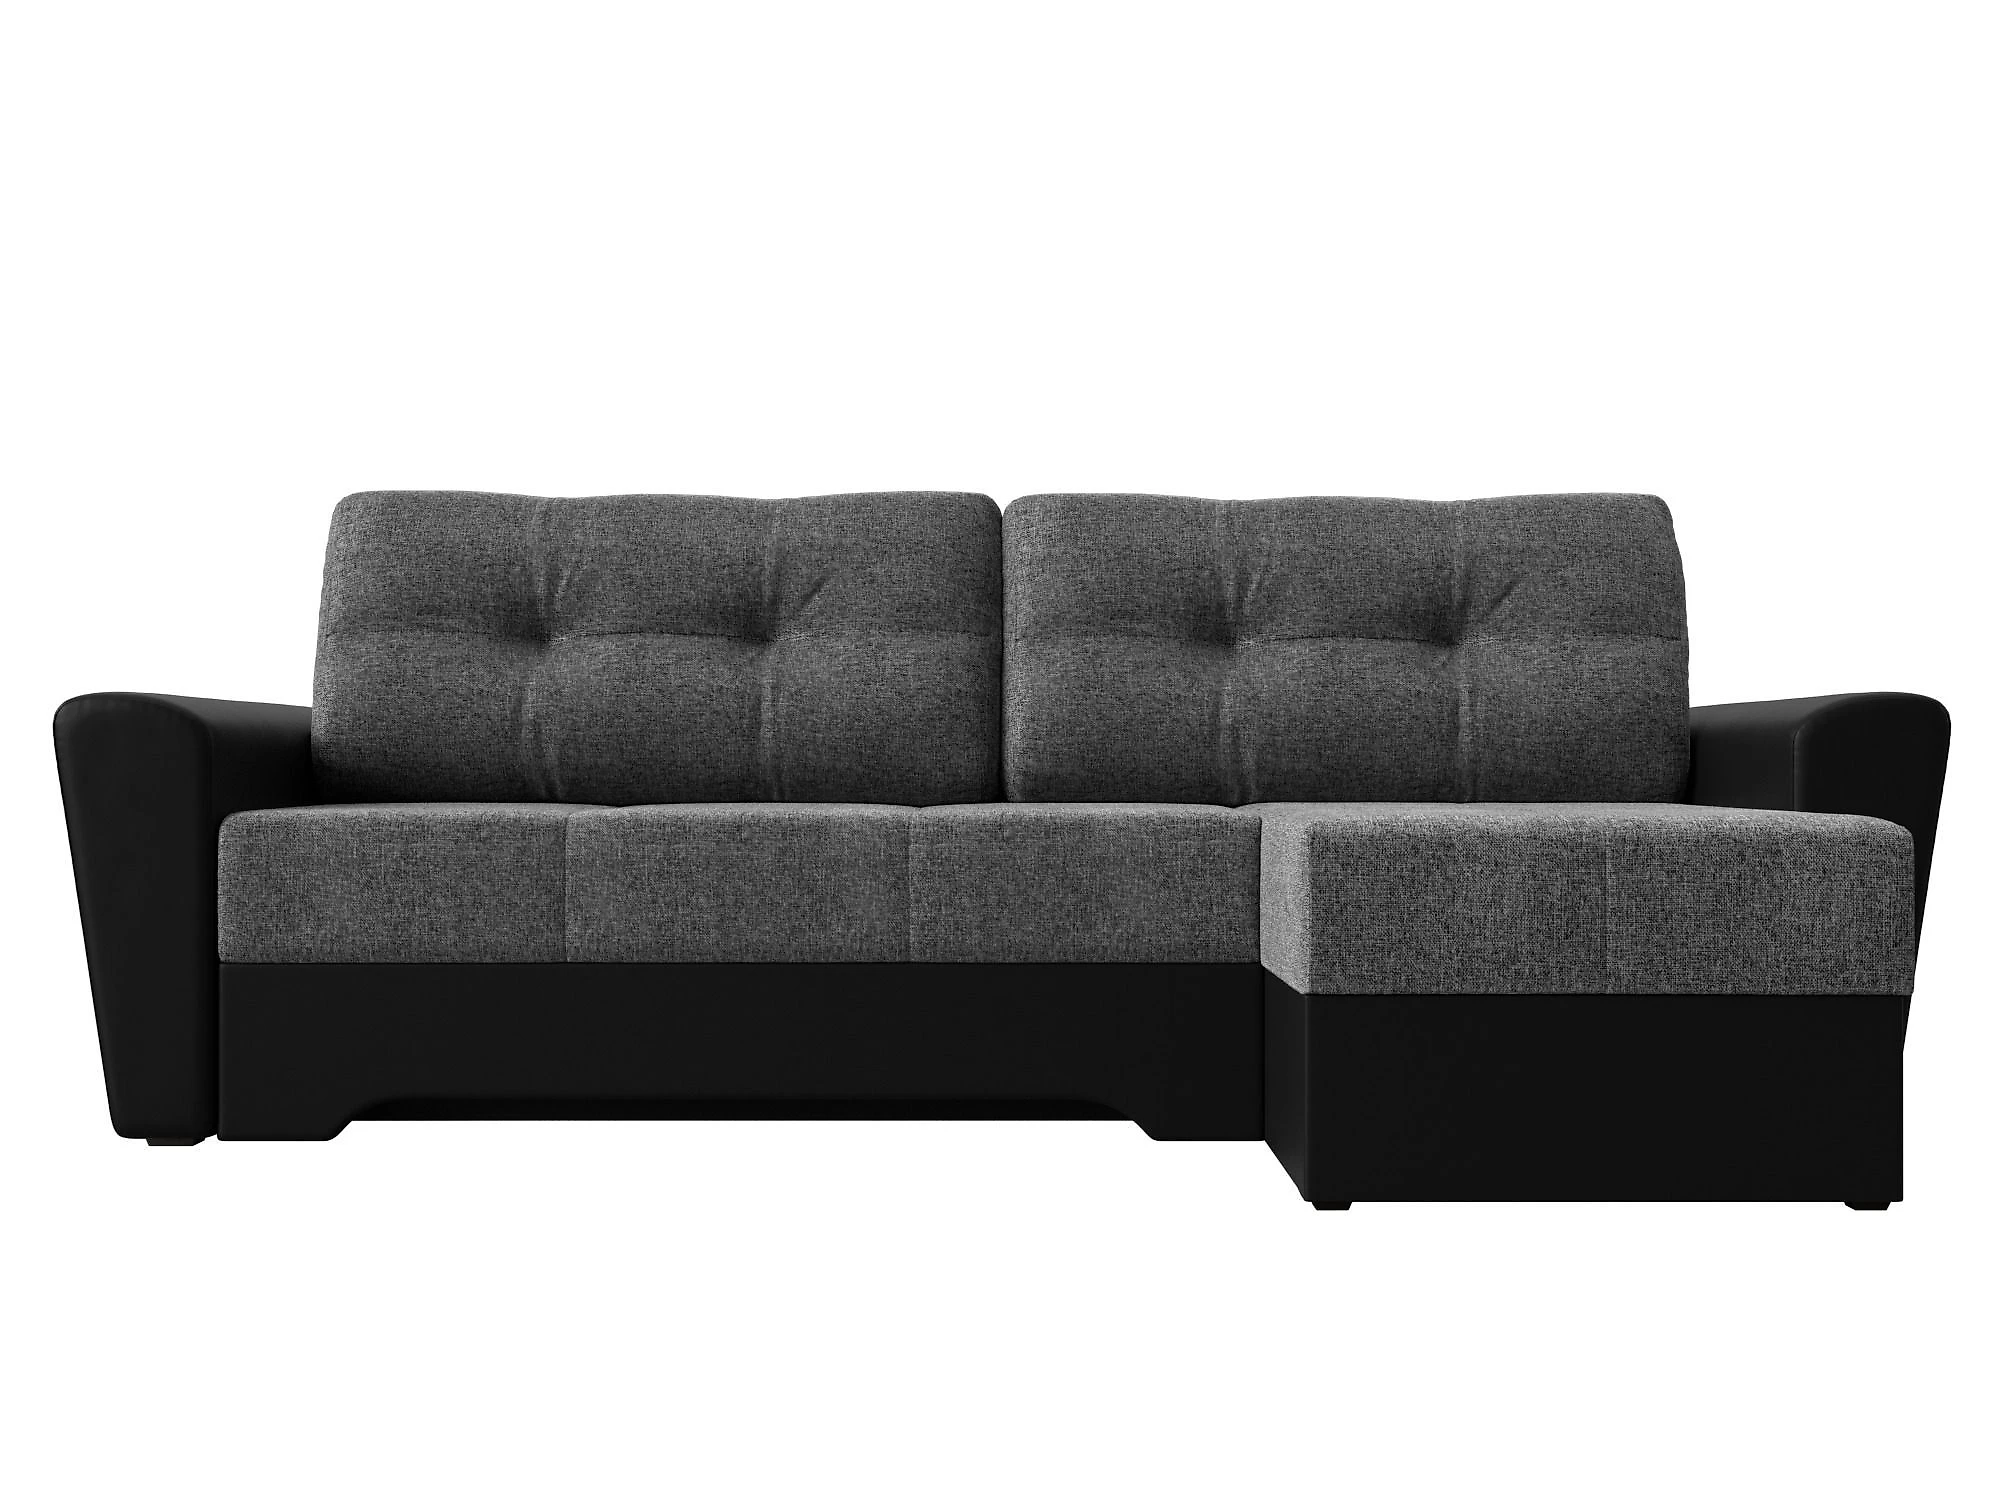  угловой диван из рогожки Амстердам Кантри Дизайн 13